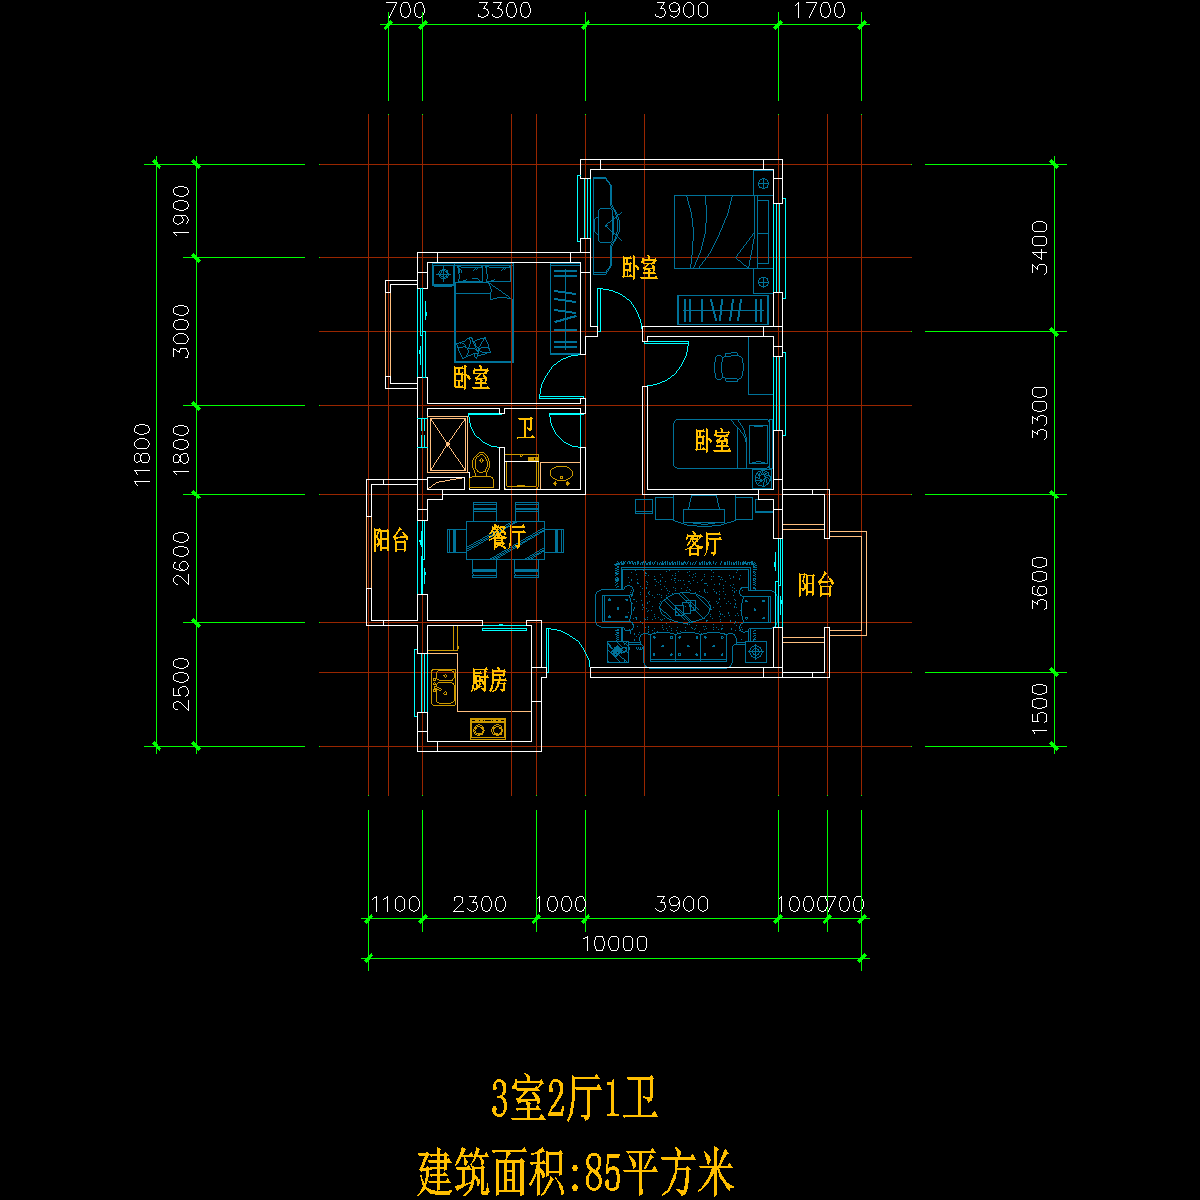 板式多层单户三室二厅一卫户型CAD图纸(85)